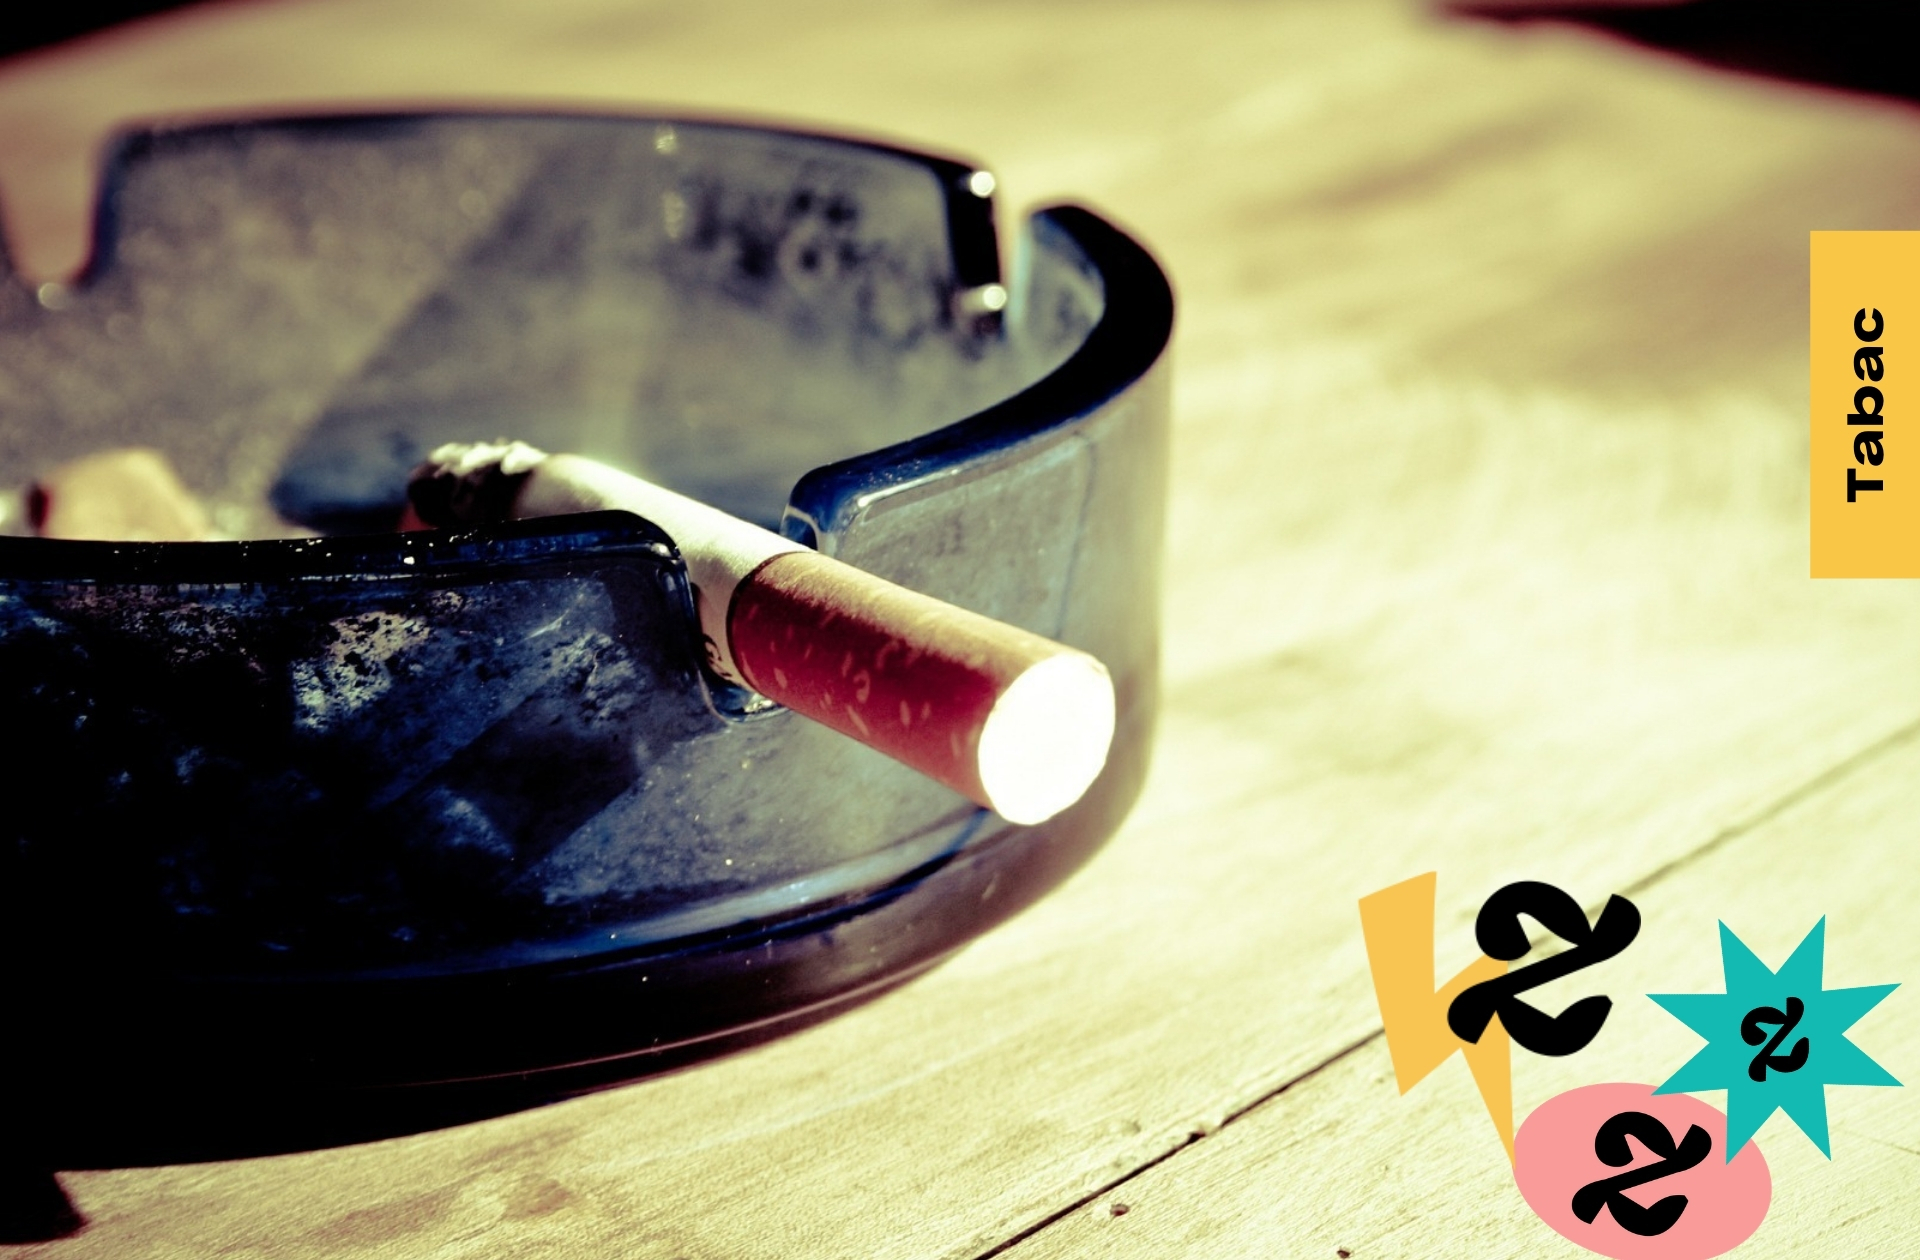 Le tabac à rouler plus toxique que les cigarettes industrielles alerte  une spécialiste